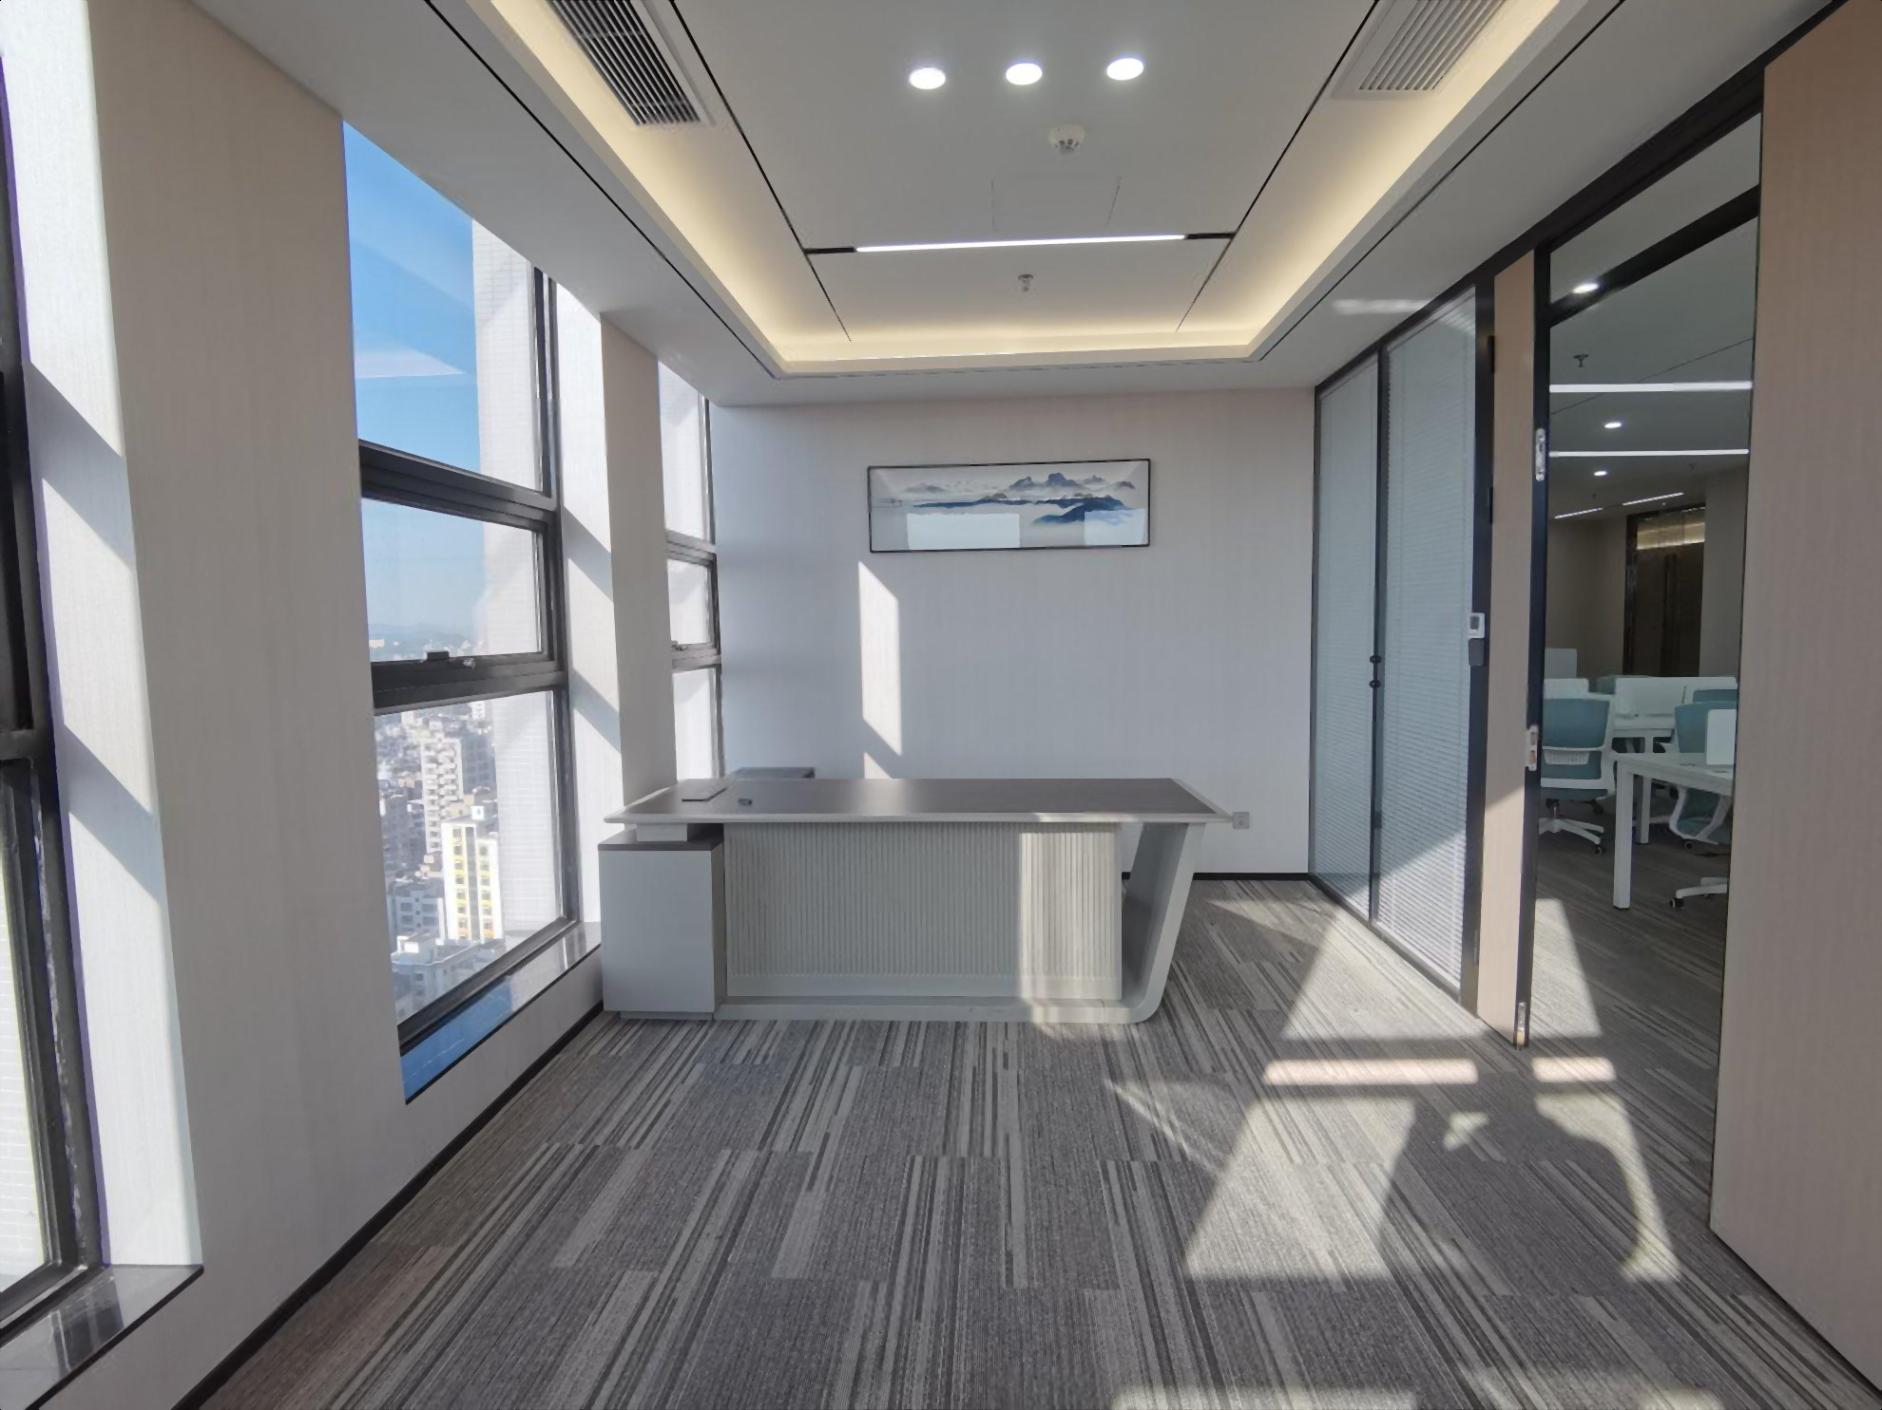 龙华地铁口开发商直租150平起精装带家私空调红本办公室